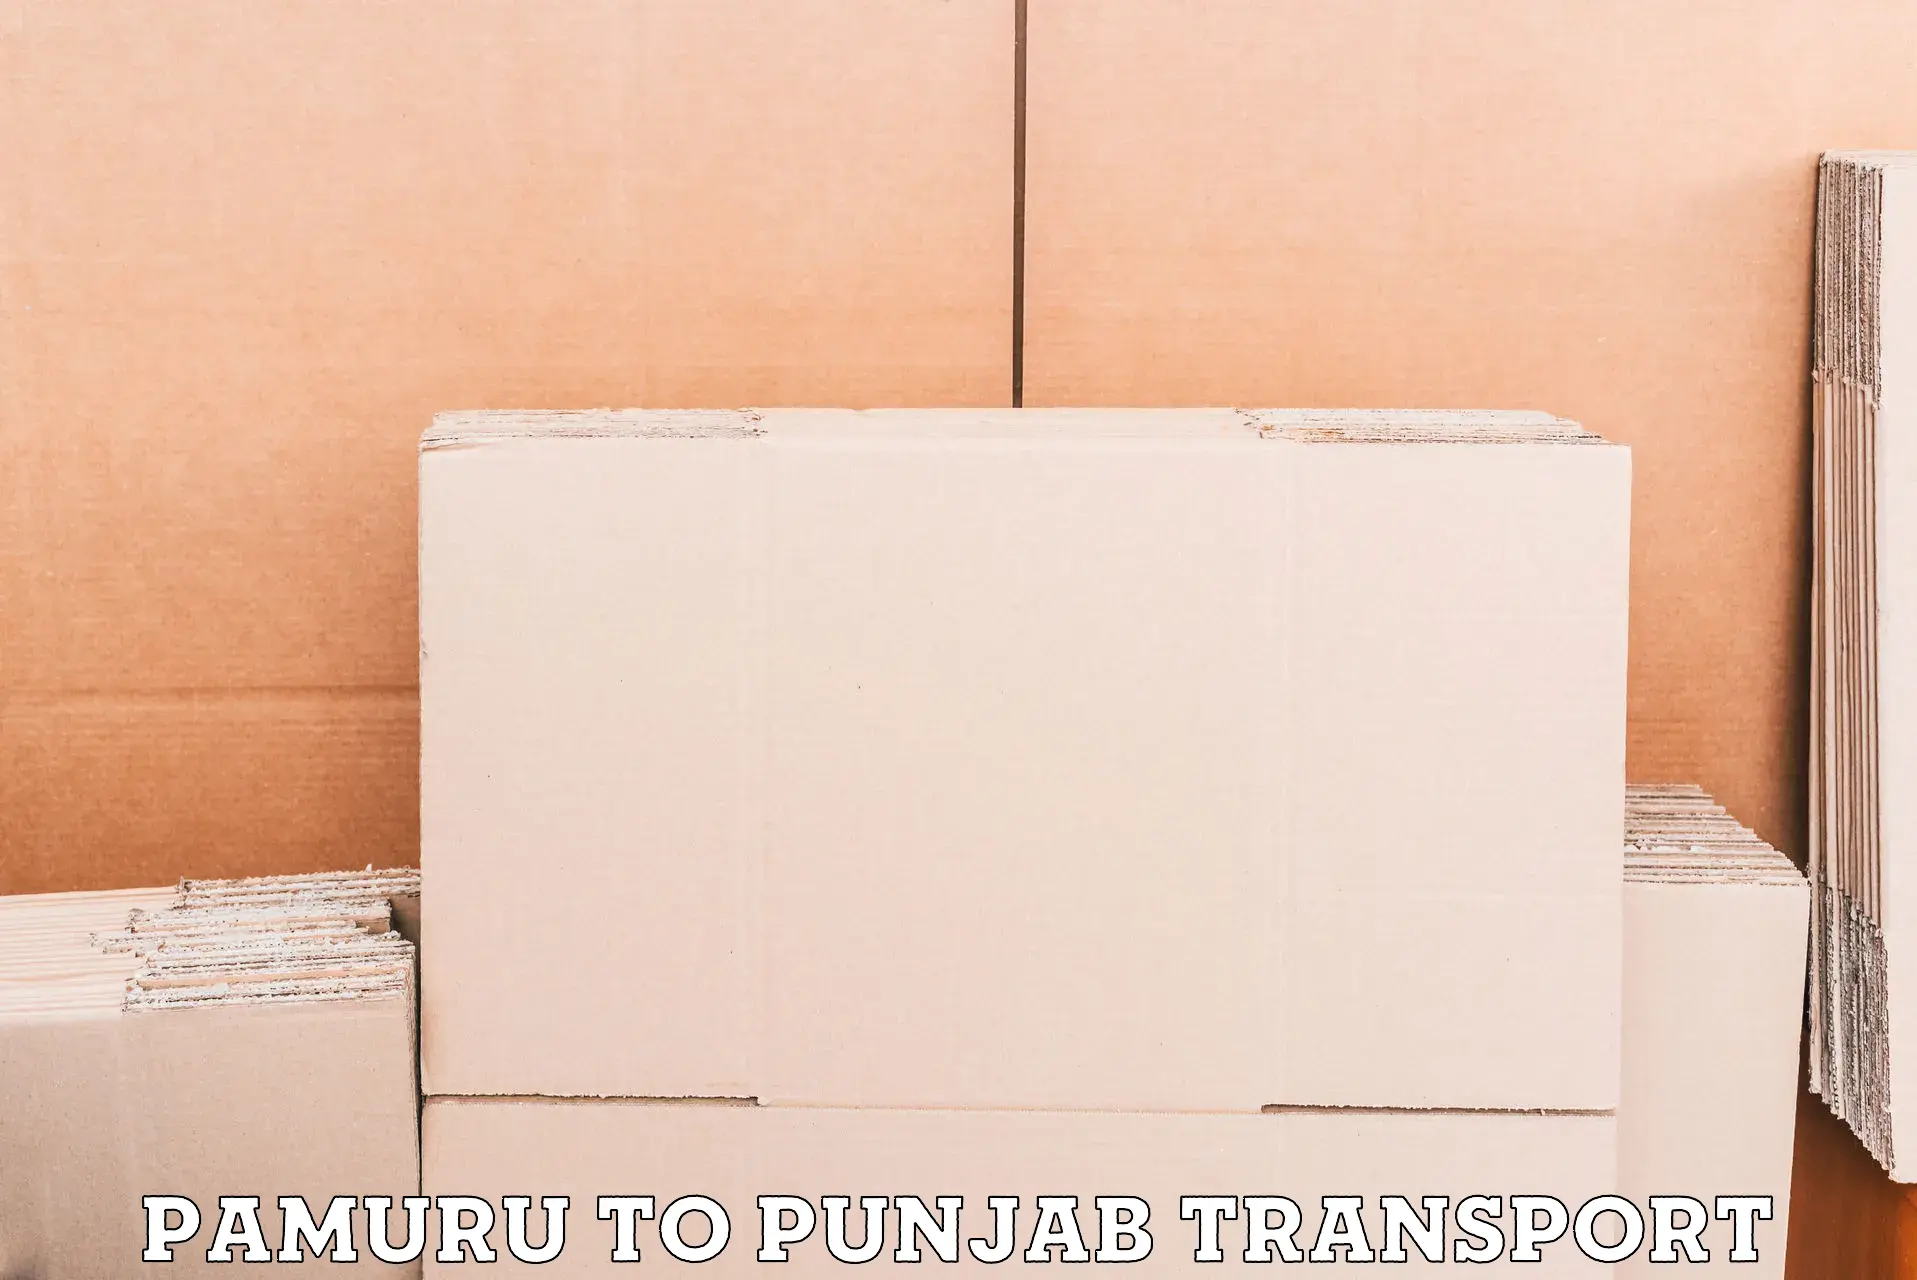 Part load transport service in India Pamuru to Talwara